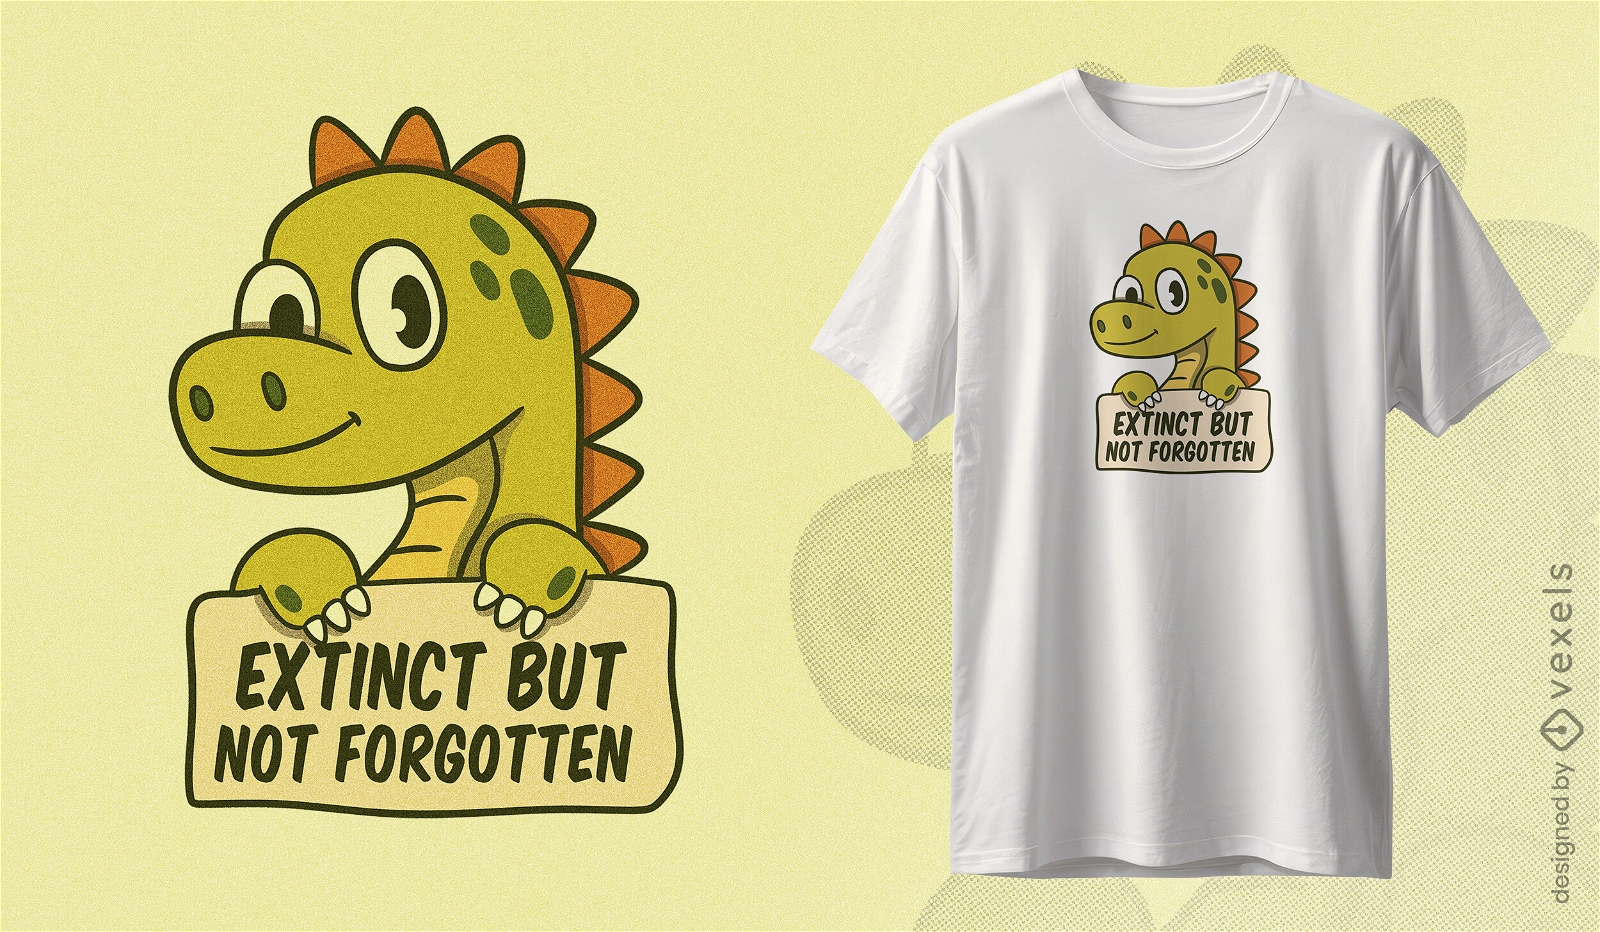 Dise?o de camiseta con mensaje de conservaci?n de dinosaurios.